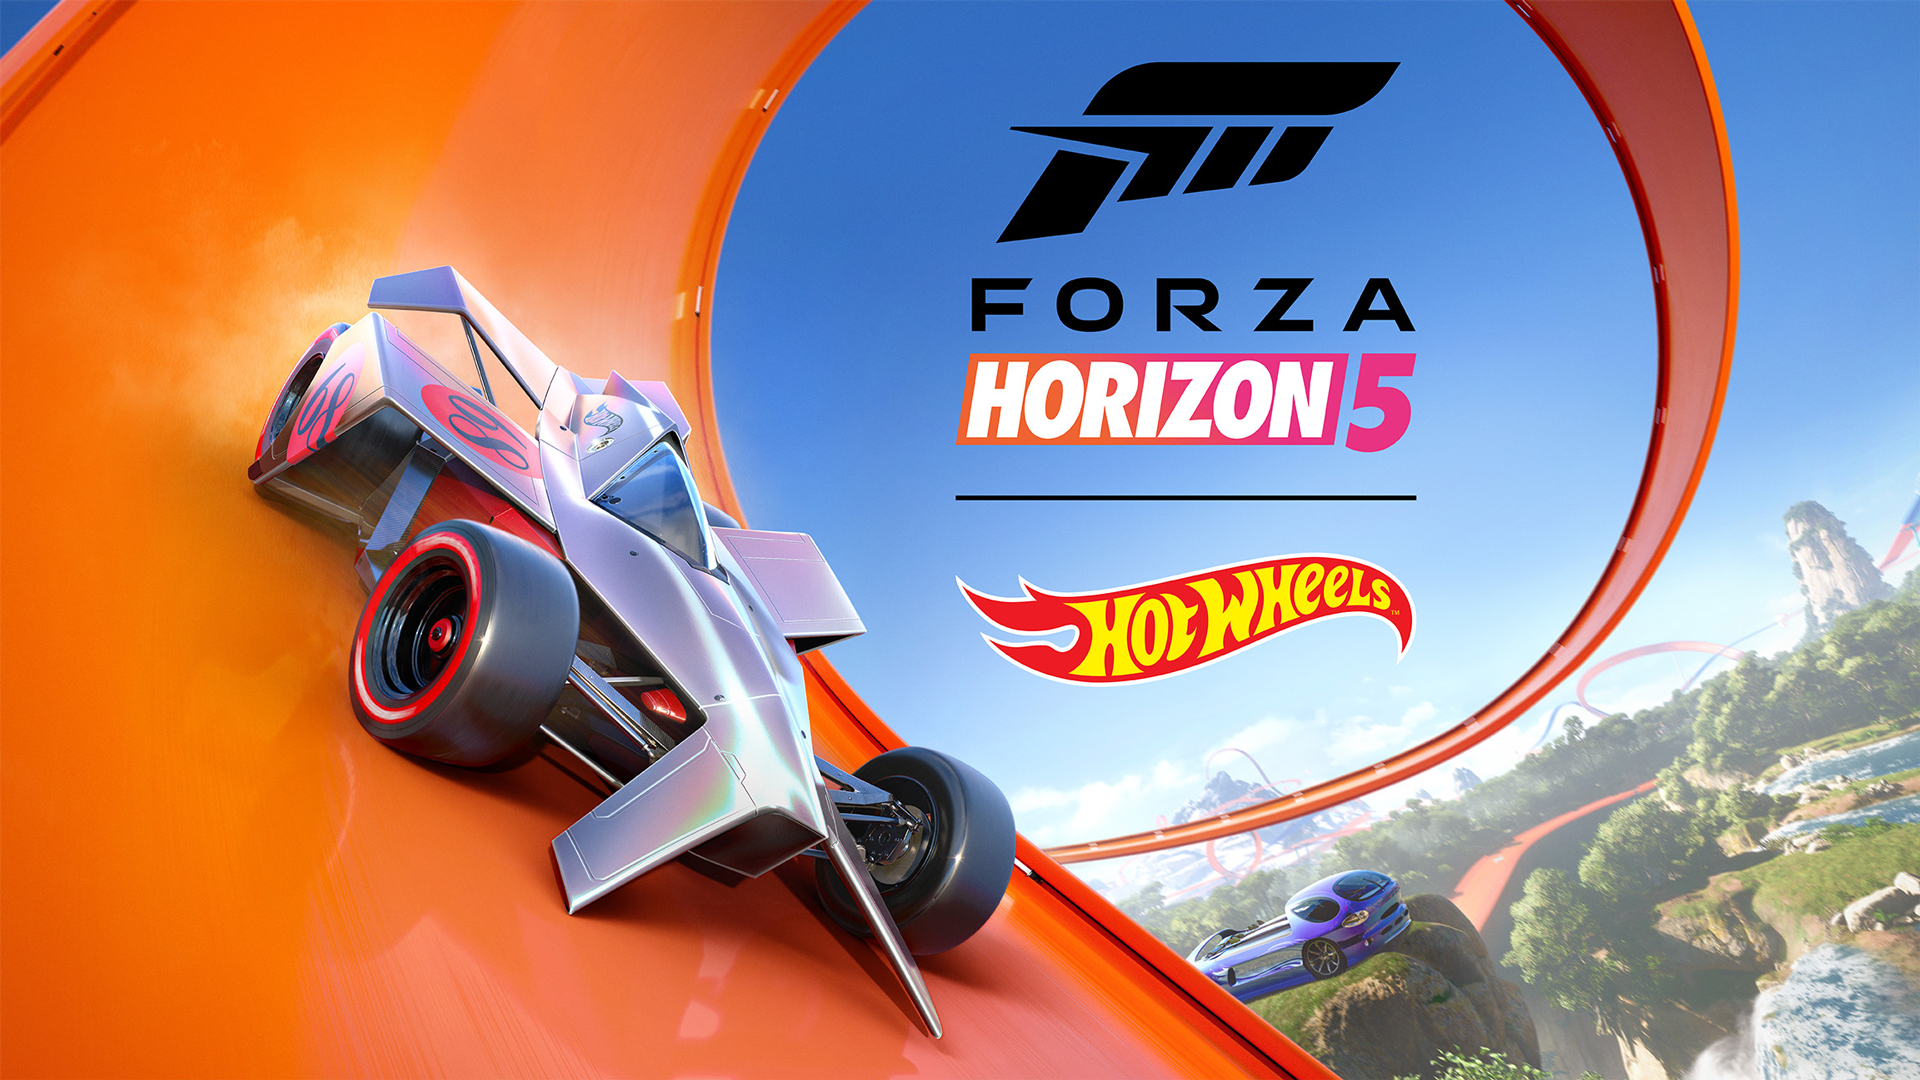 ビデオの対象「Hot Wheels」が『Forza Horizon 5』待望の拡張パック第 1 弾として帰還！